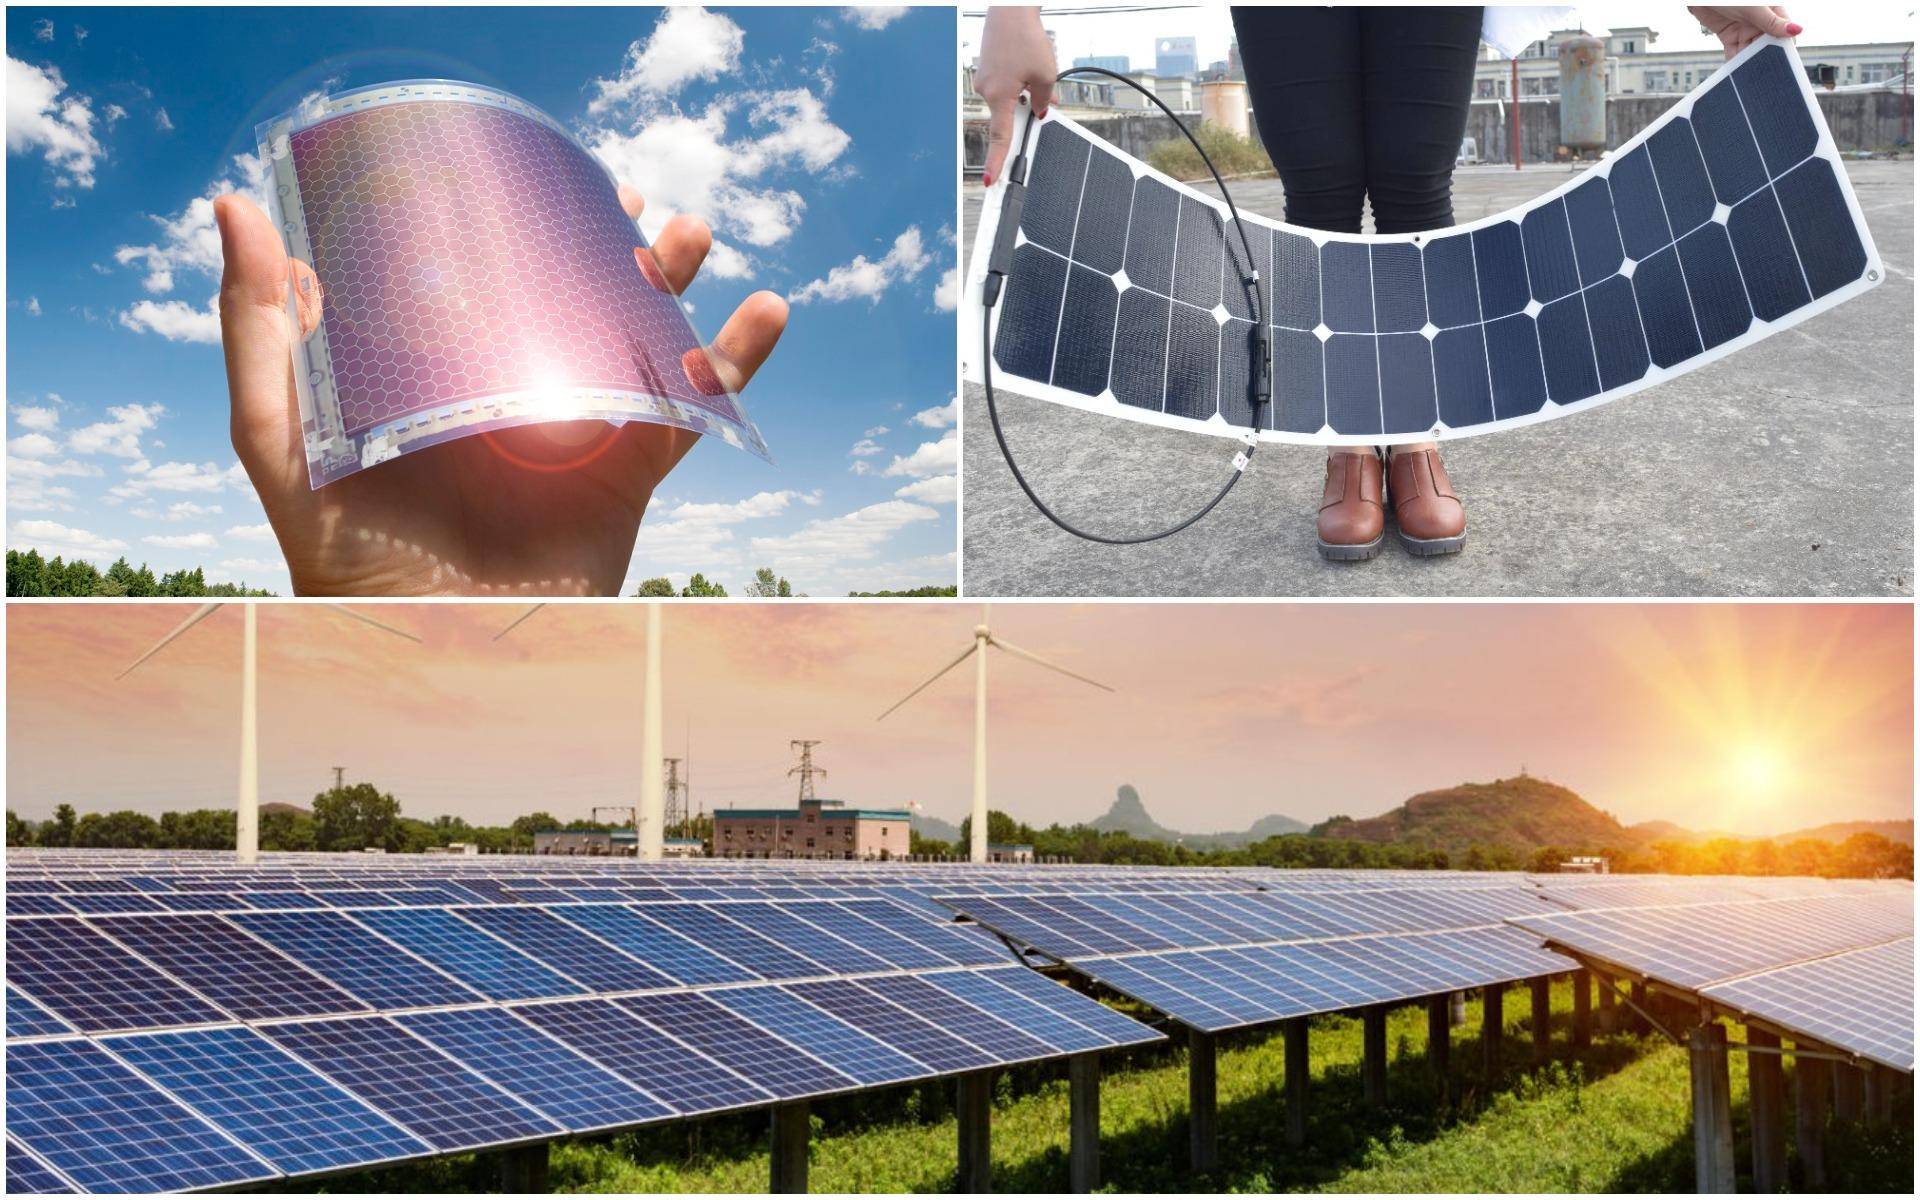 Какие бывают гибкие солнечные батареи и в чем их преимущества